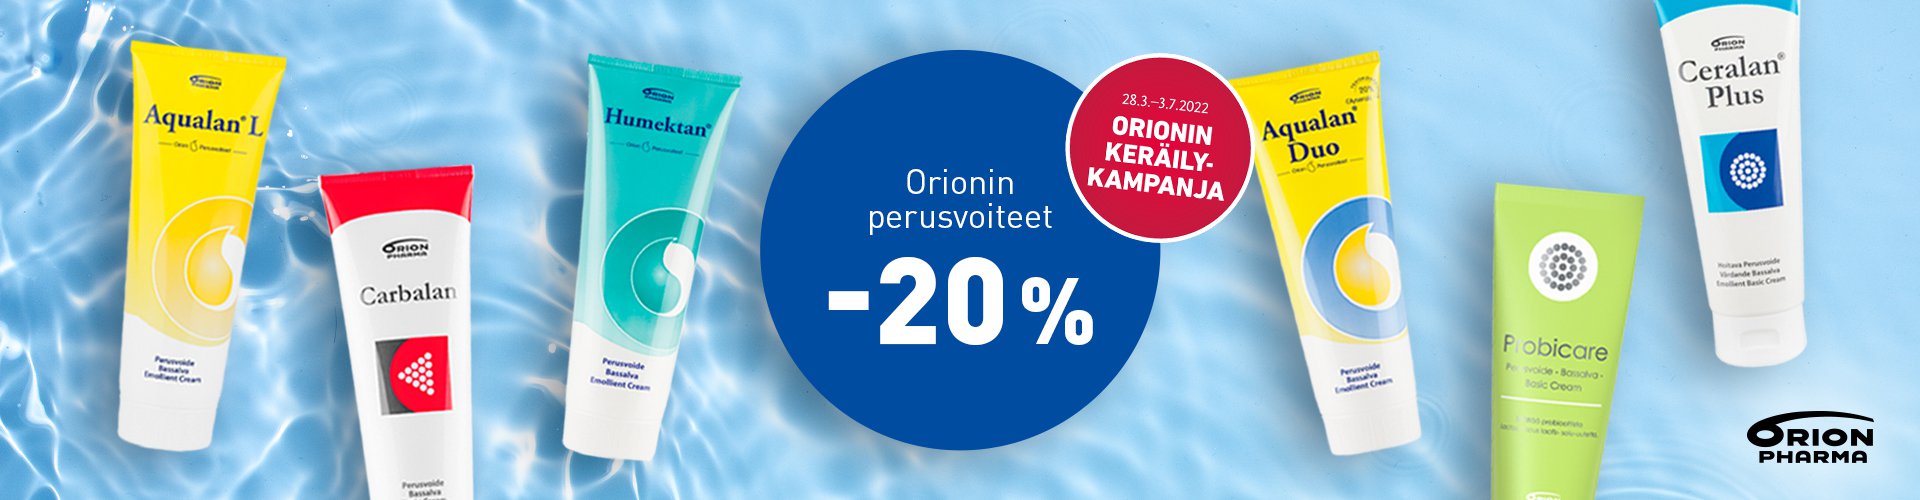 Orionin perusvoiteet -20% - osallistu Orionin keräilykampanjaan